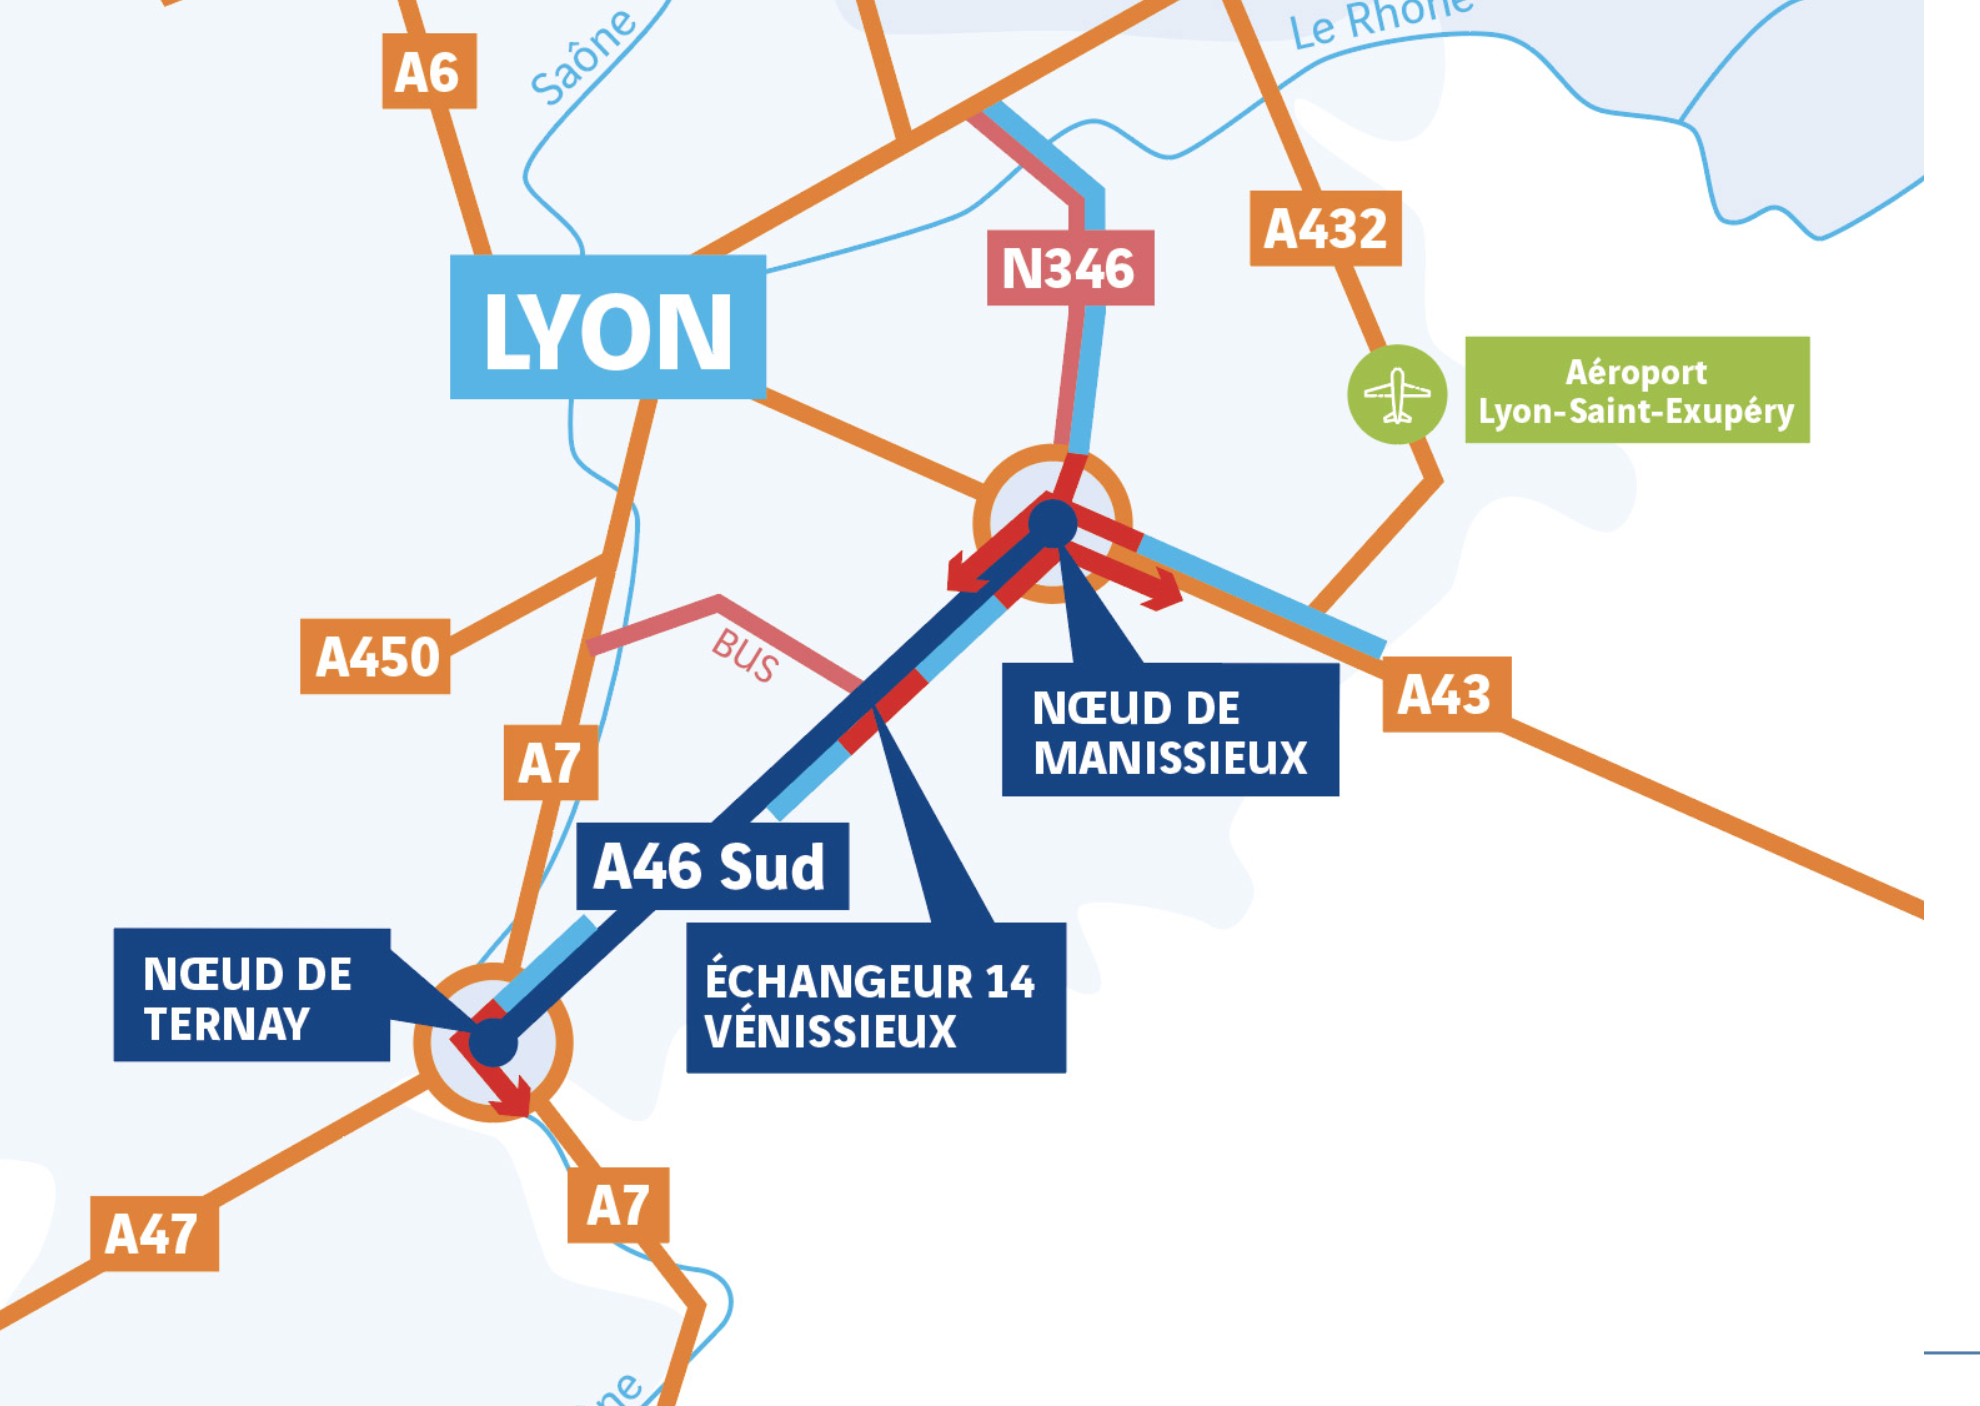 L’A46 Sud en 2 x 3 voies dans l’Est lyonnais : le projet autoroutier qui fait la (quasi) unanimité contre lui